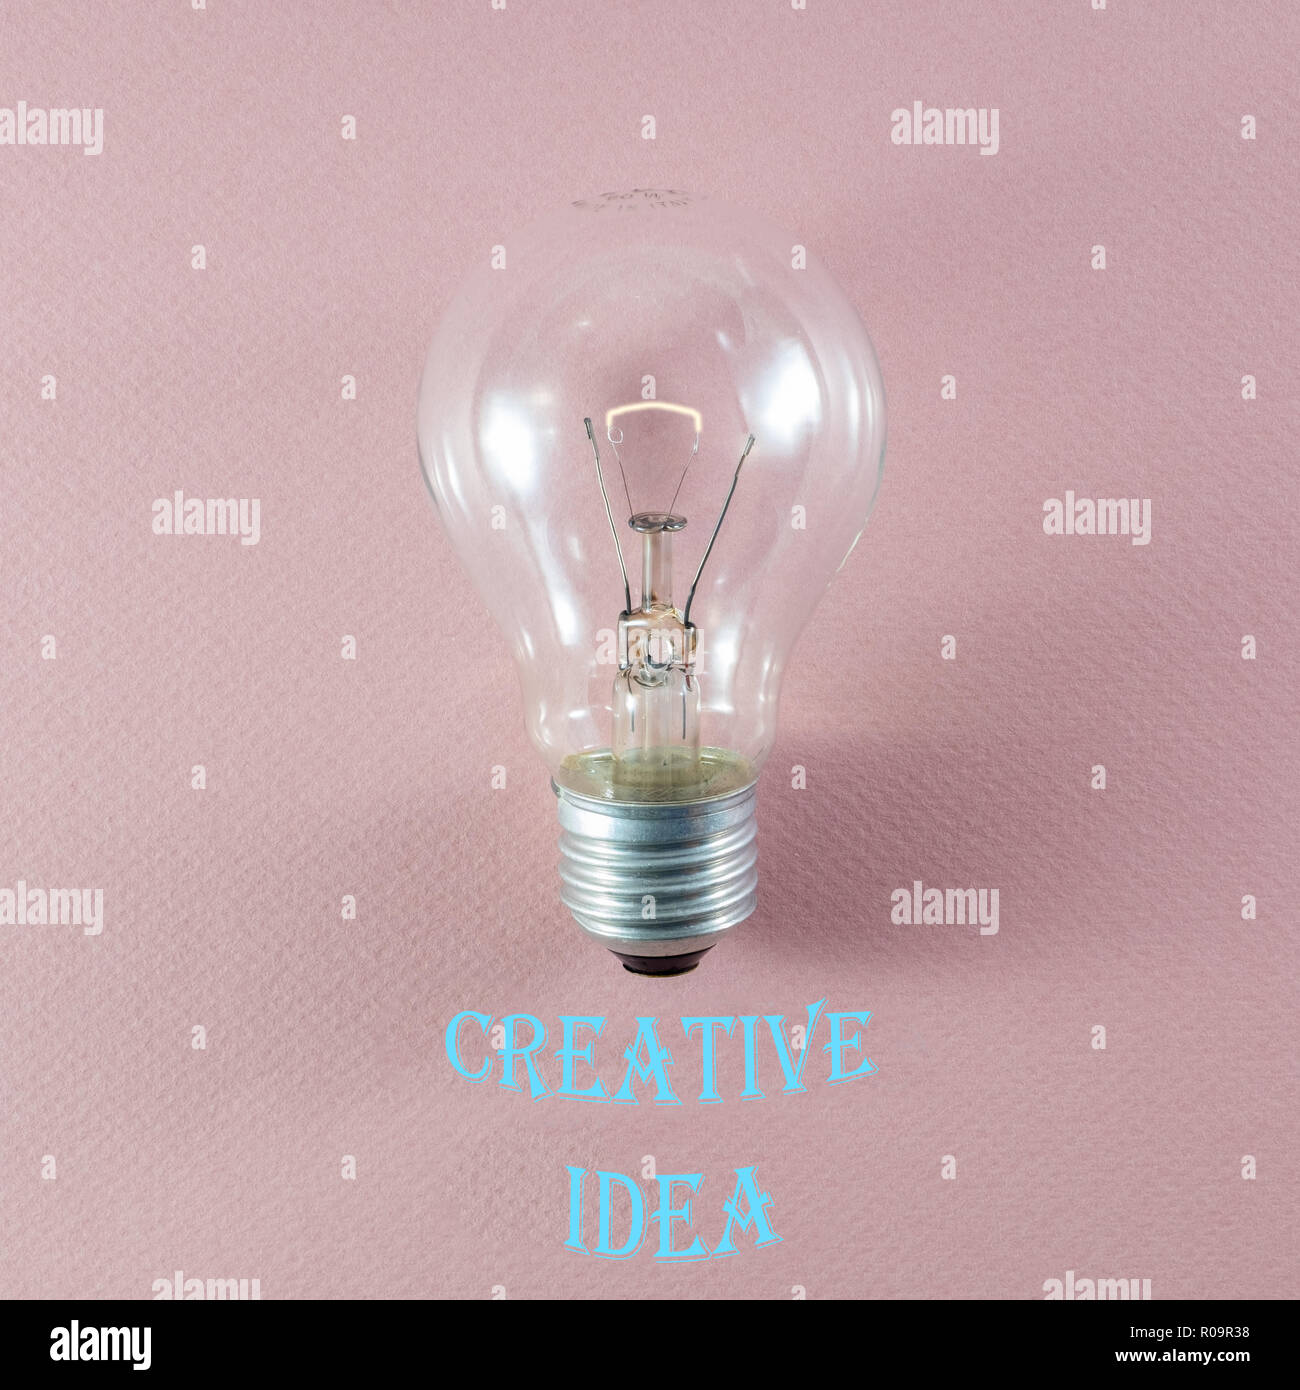 Kreative Idee und Innovation Konzept über leuchtet die Glühbirne auf rosa Hintergrund und entsprechenden Text in moderne Schrift Stockfoto